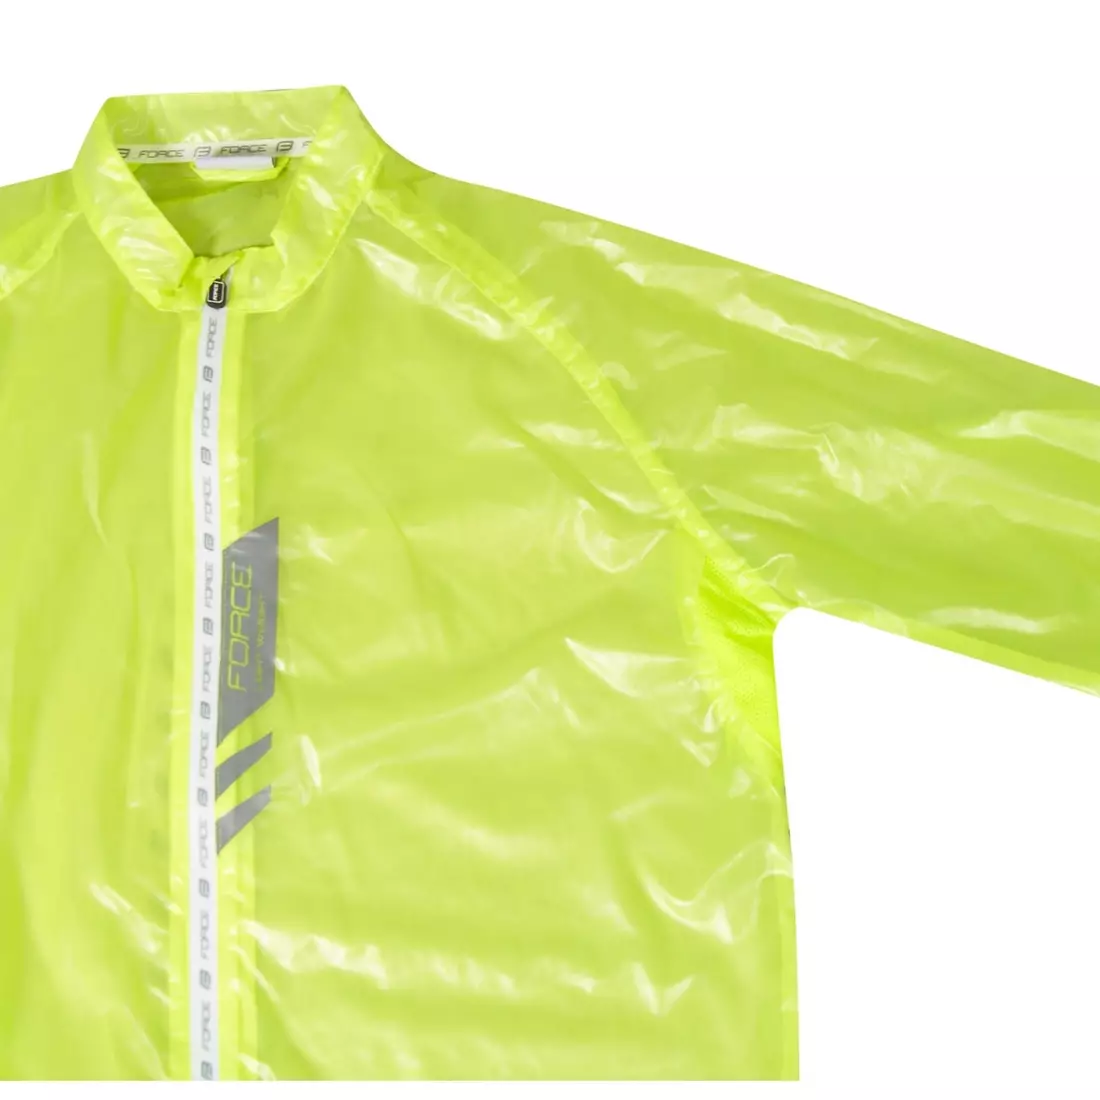 FORCE SLIM jachetă de ploaie pentru ciclism pentru bărbați, fluor galben